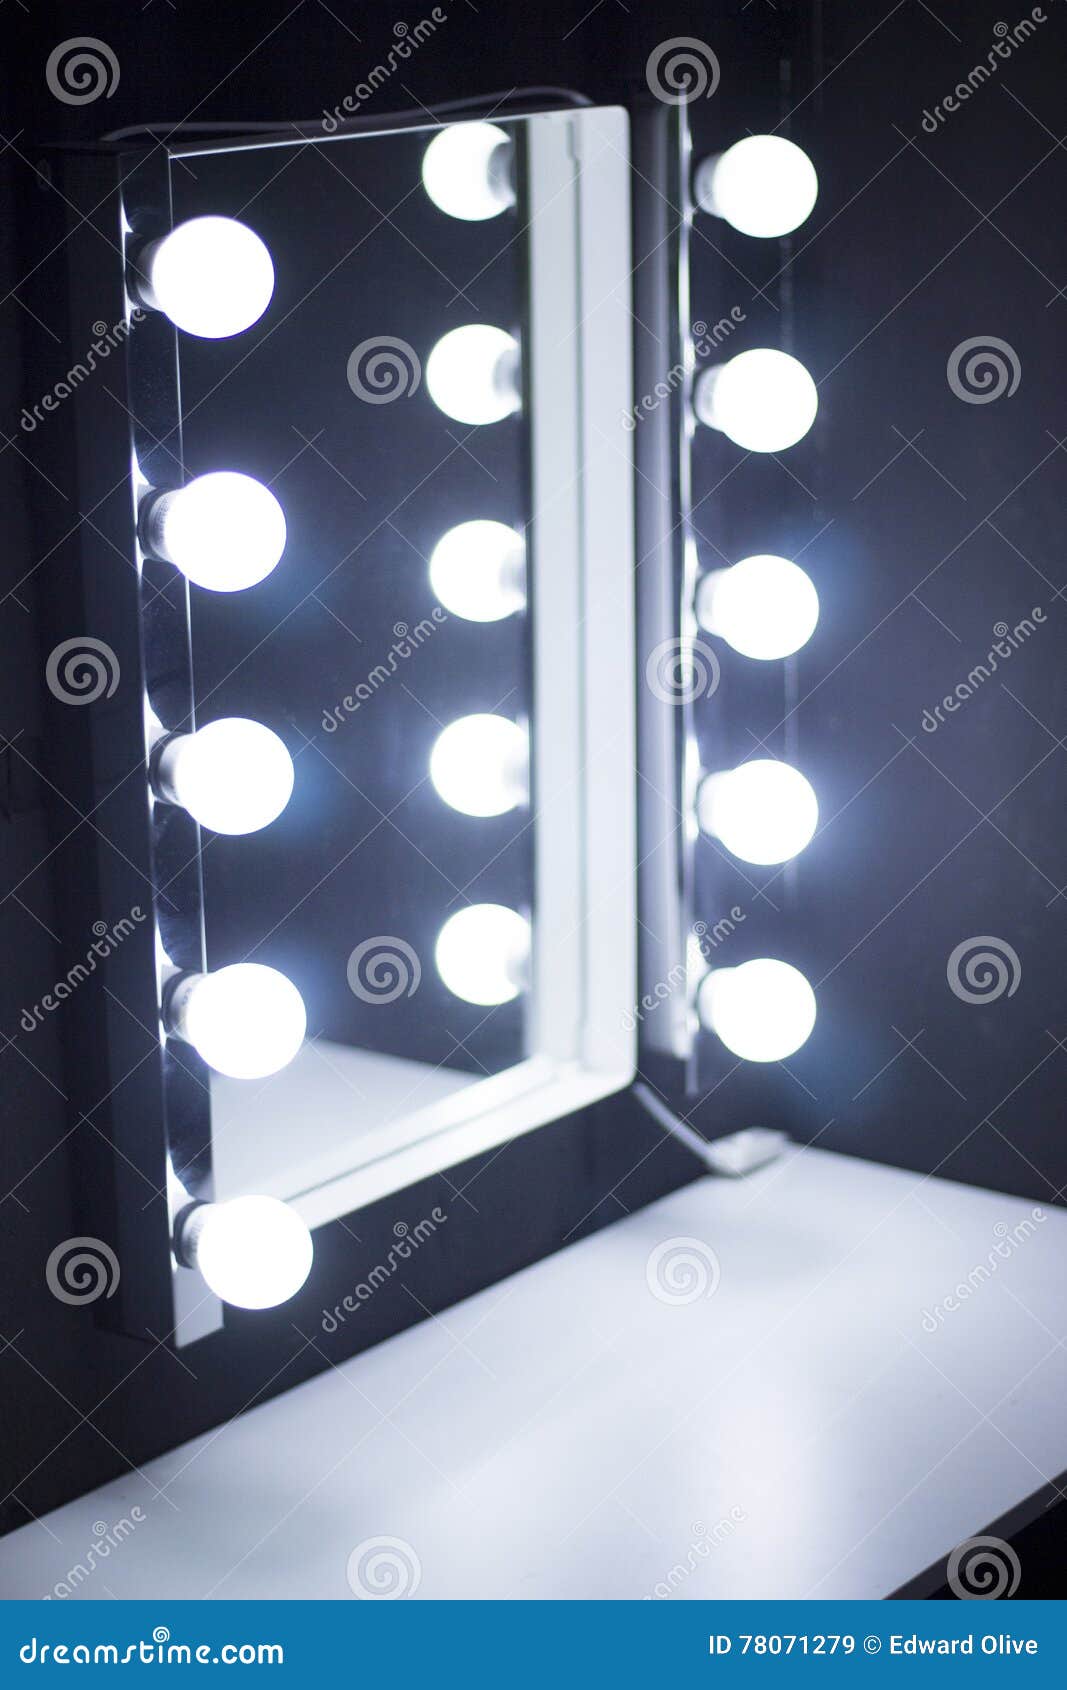 Lumières De Miroir De Table De Maquillage De Studio Image stock